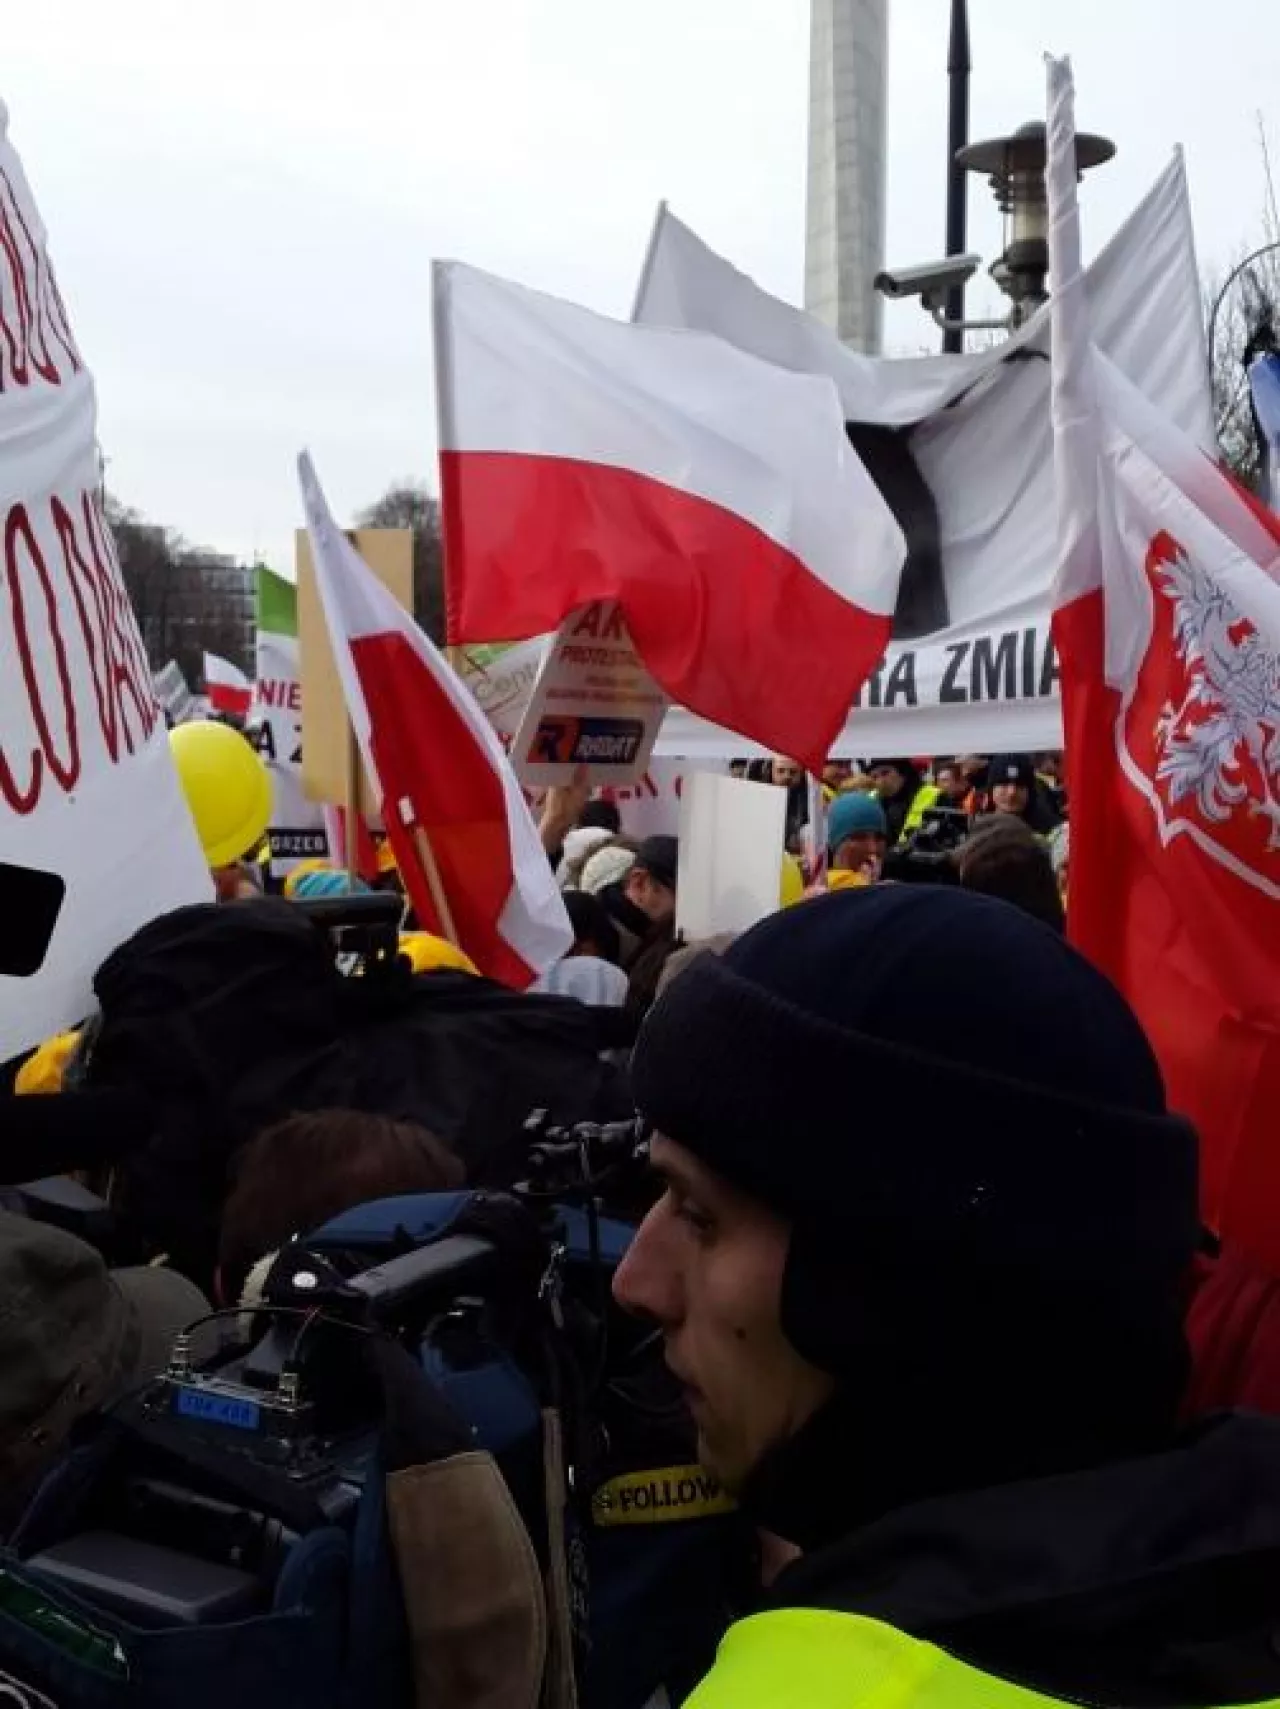 Minister Henryk Kowalczyk wyszedł do tłumu protestujących osób (fot. PJ/wiadomoscihandlowe.pl)